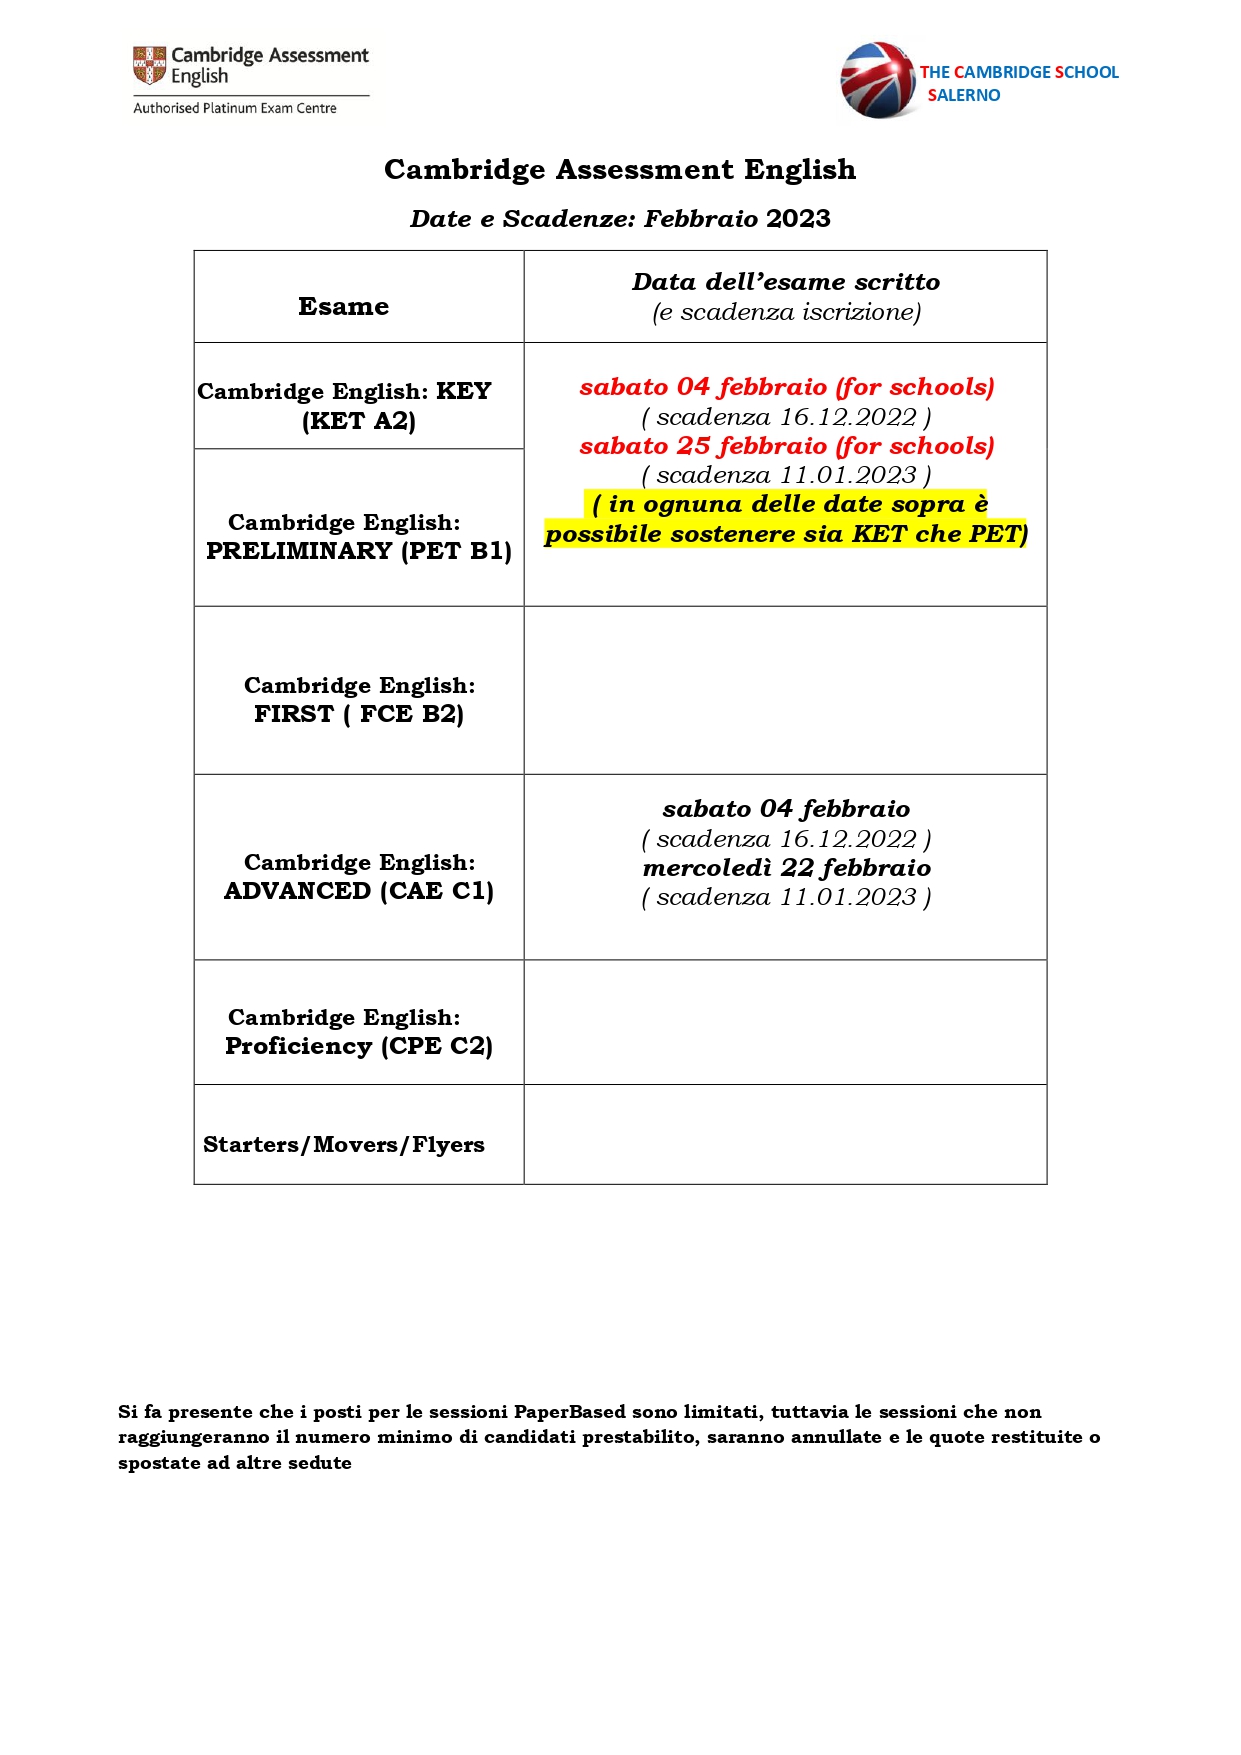 3_Entry form esami e prezzi legati FEBBRAIO FULL 2023 NAPOLI OK_page-0001